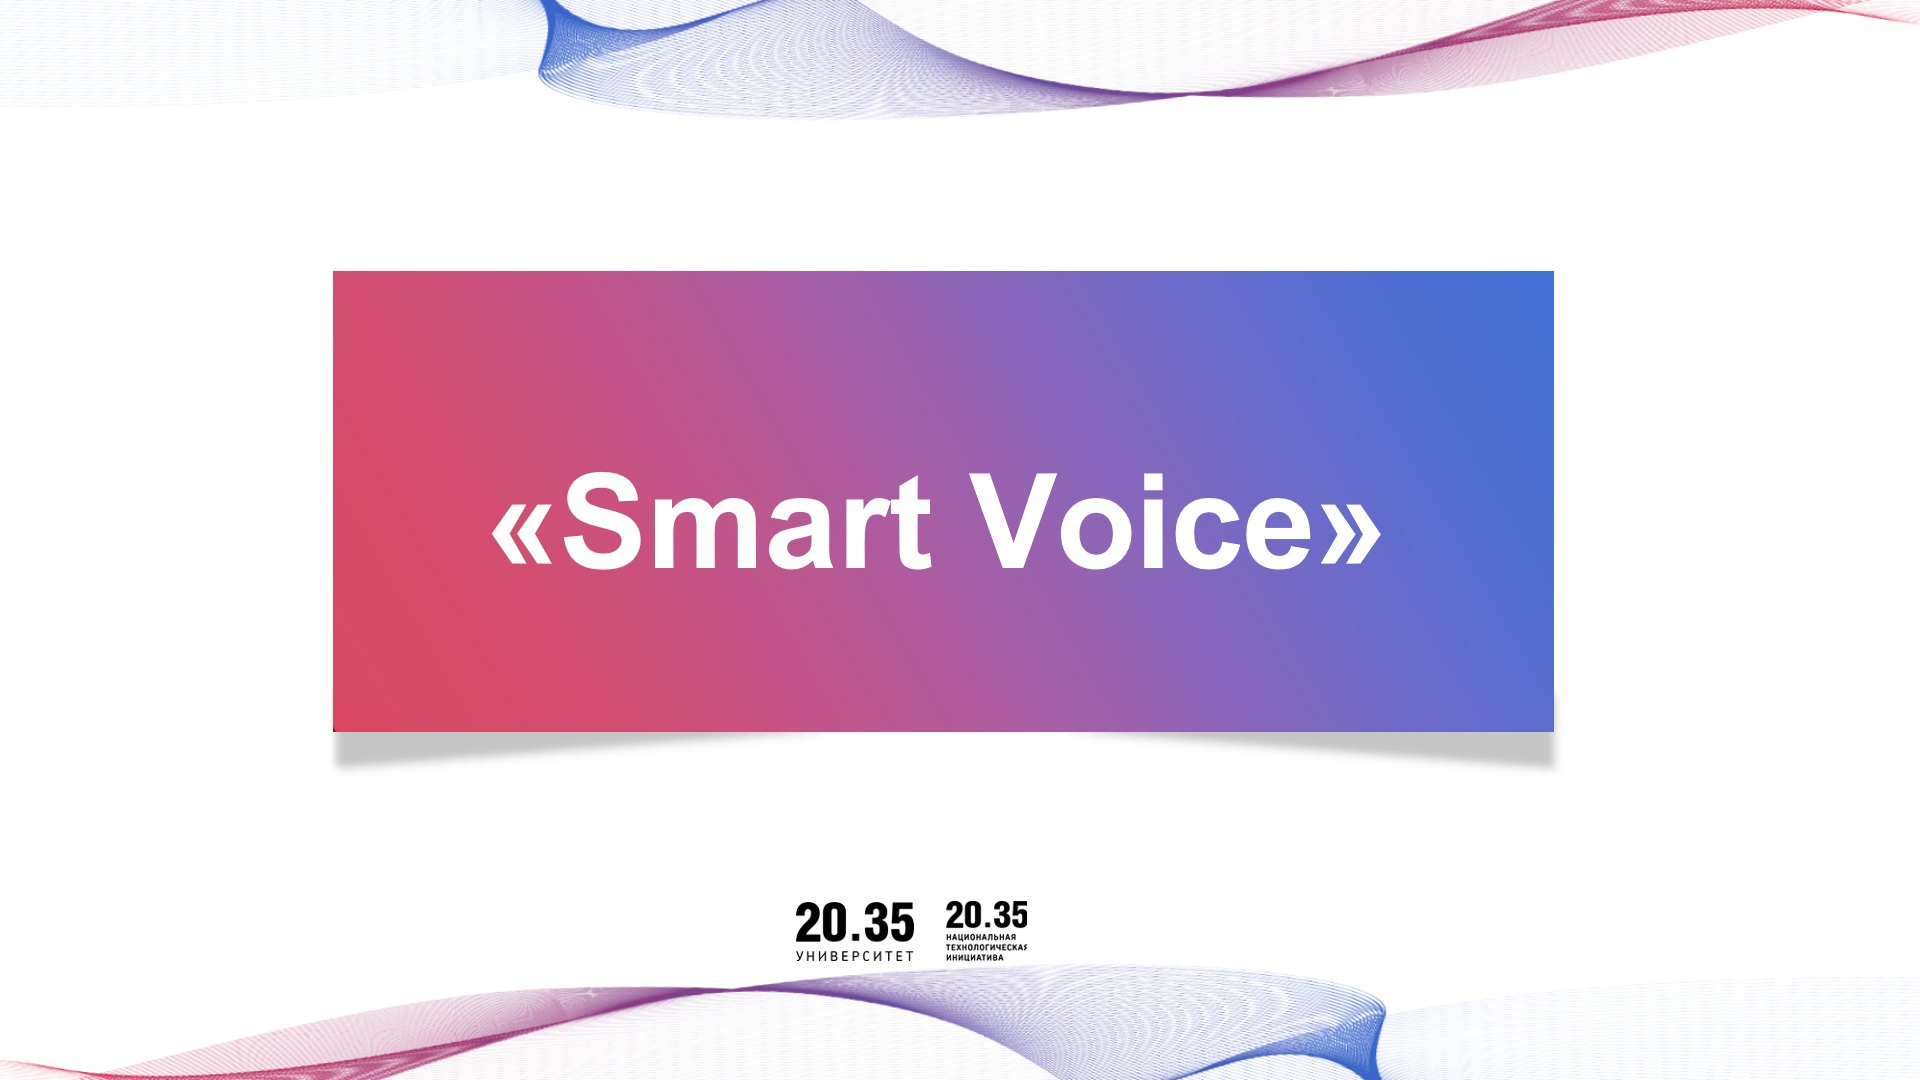 «Smart Voice”